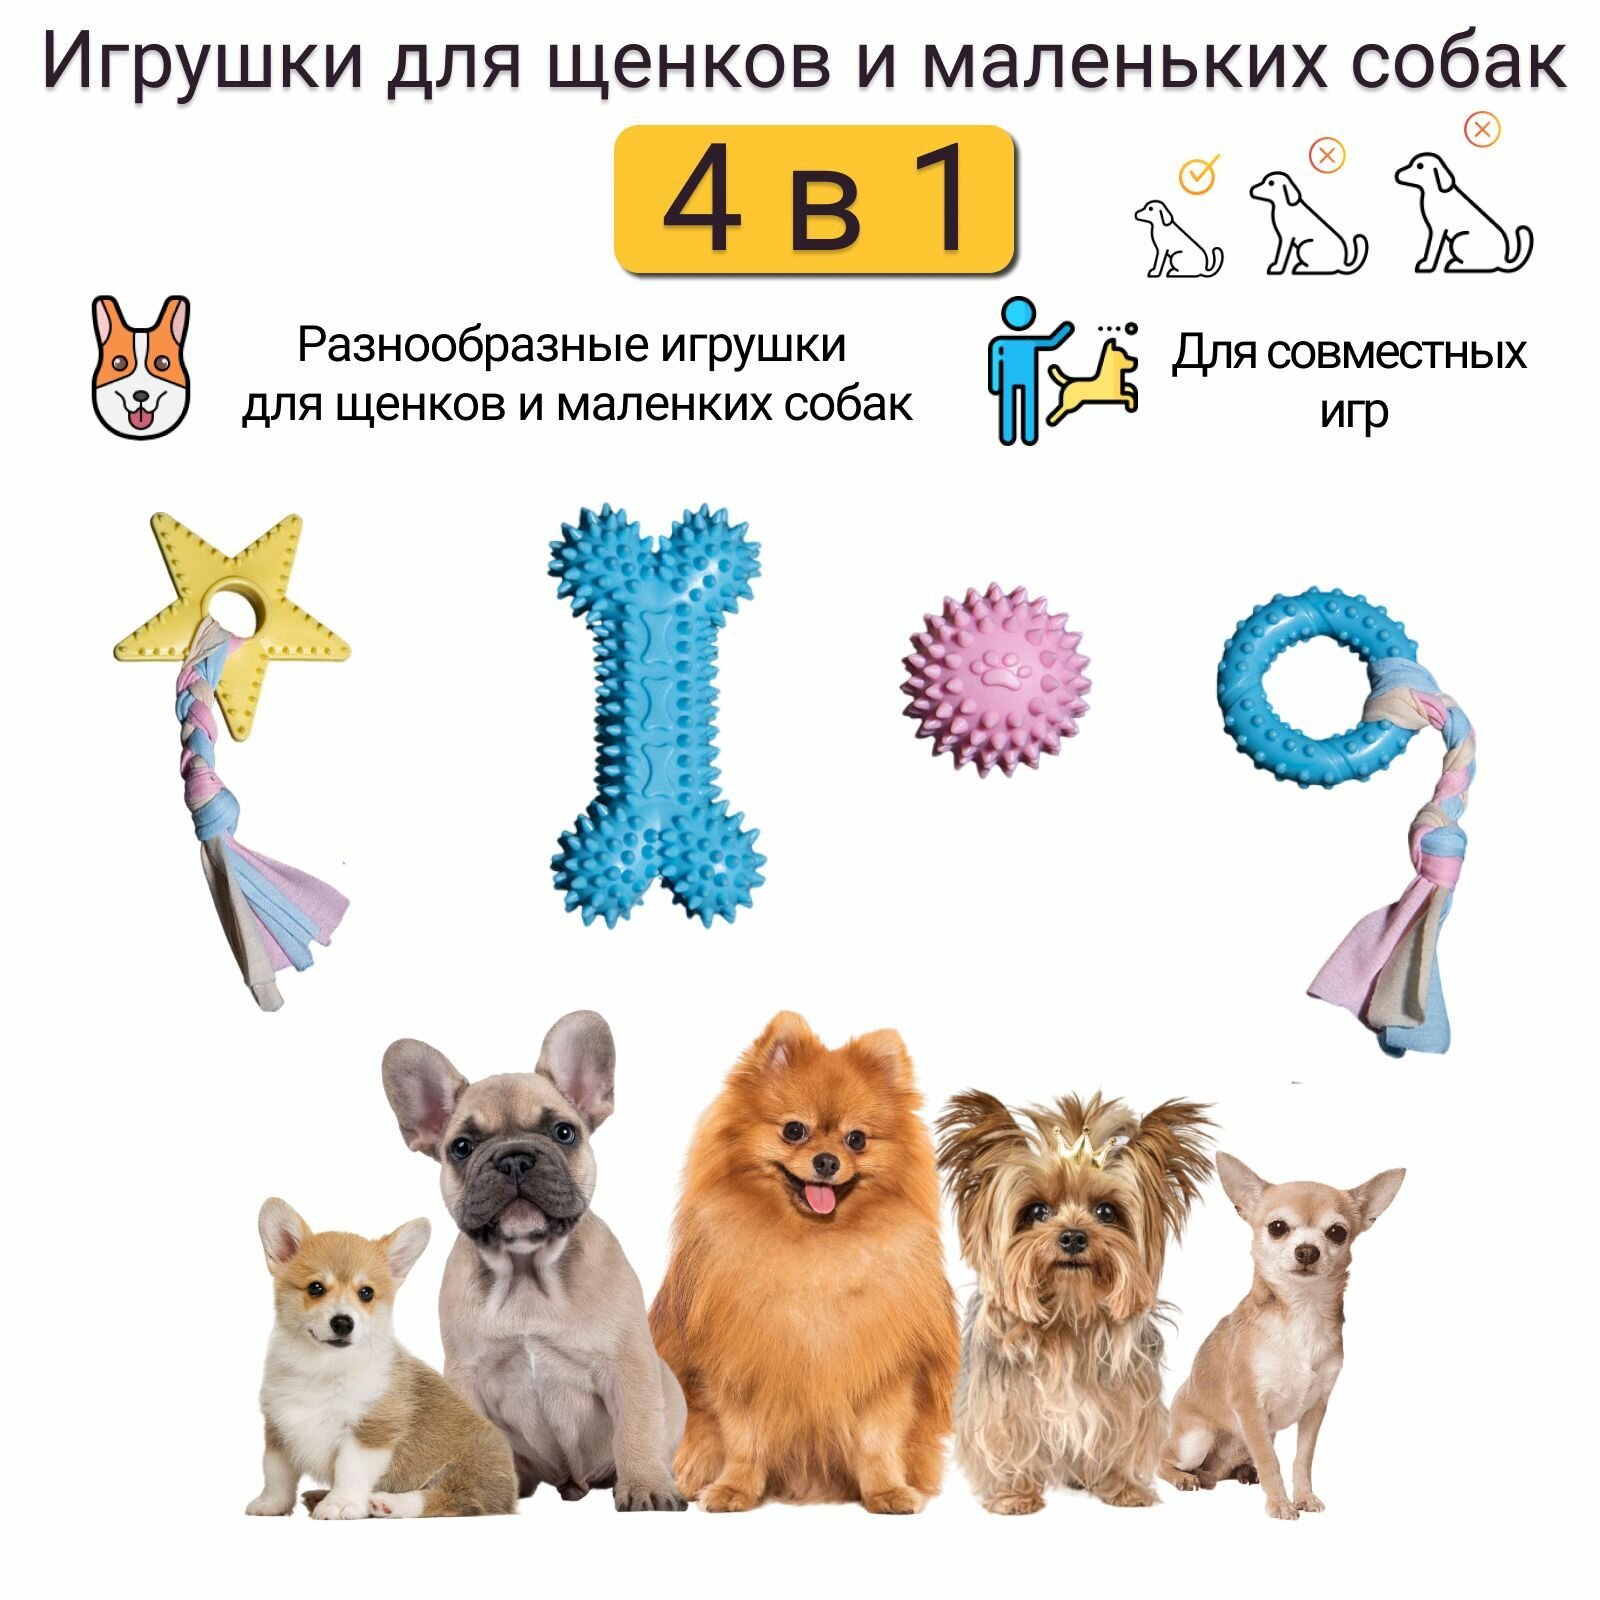 Игрушки для щенков и маленьких собак